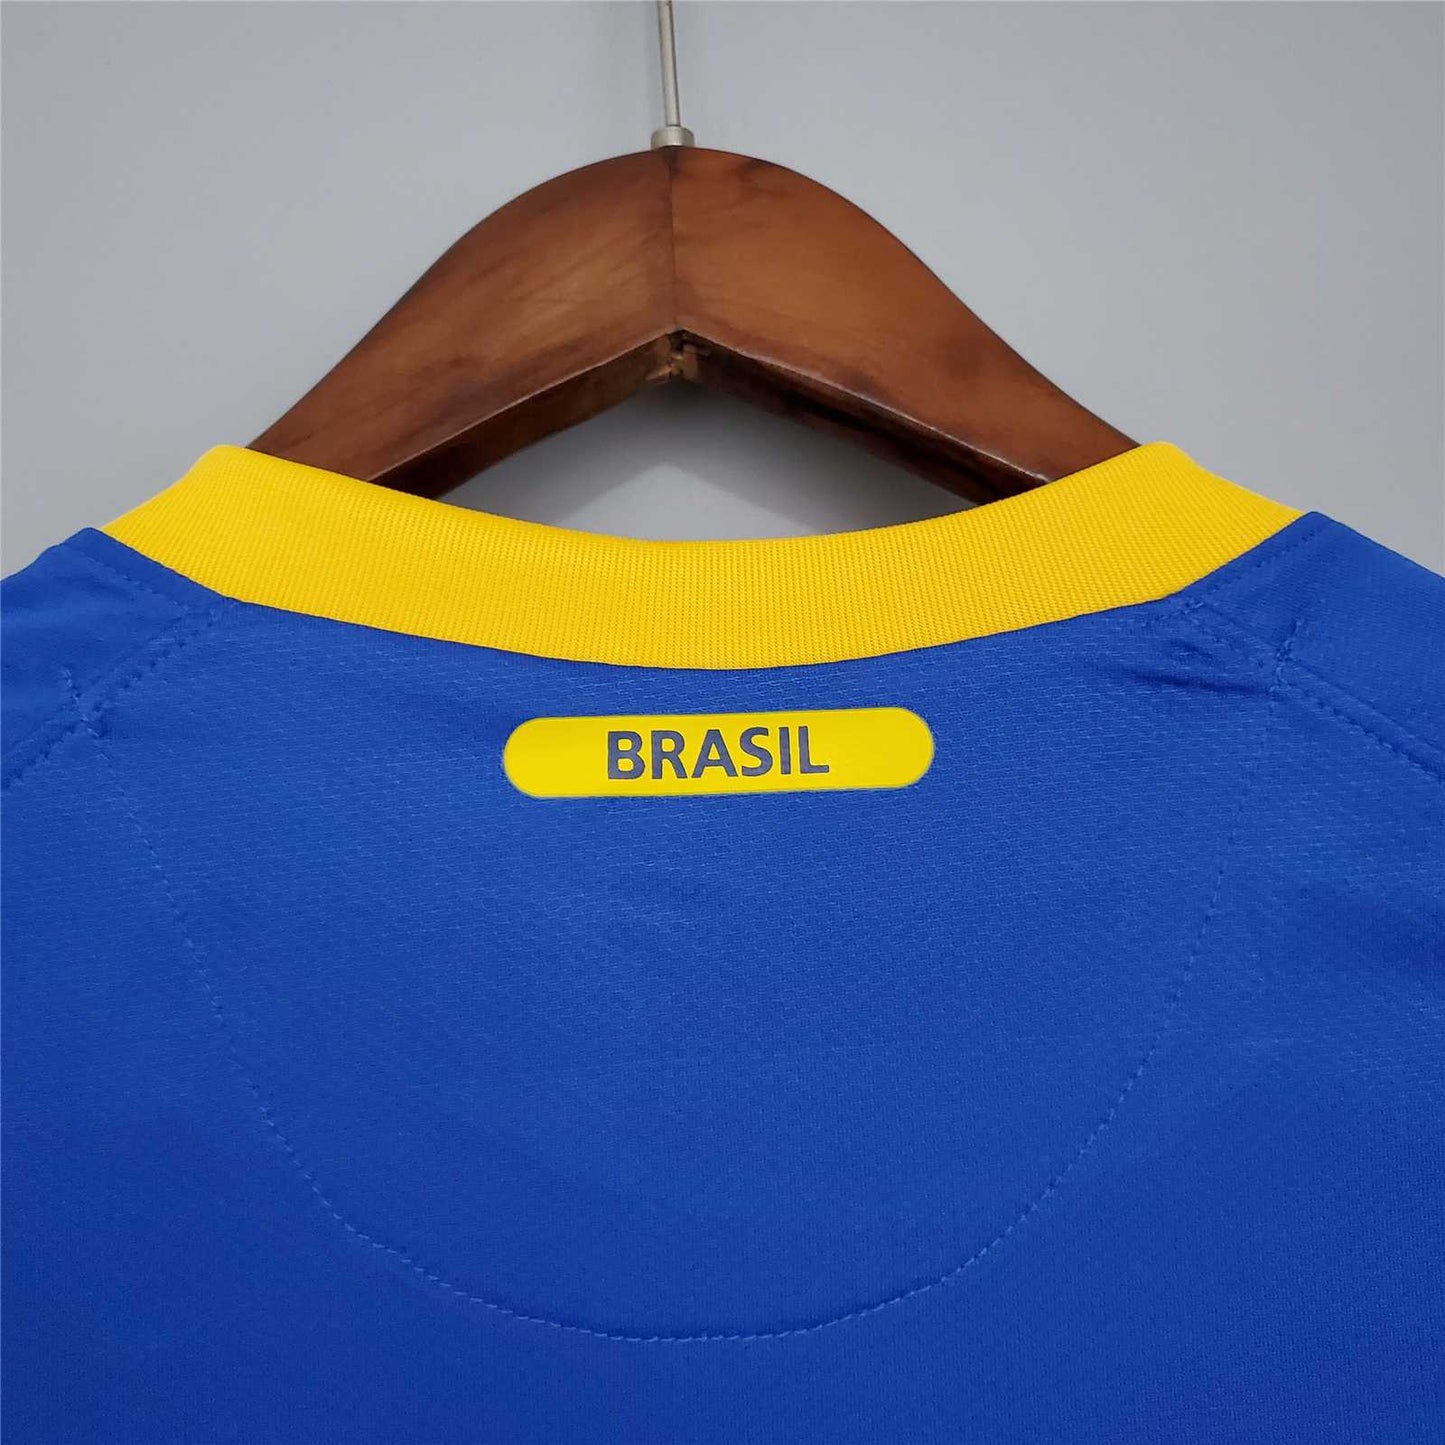 Brazil 2010 Away Shirt